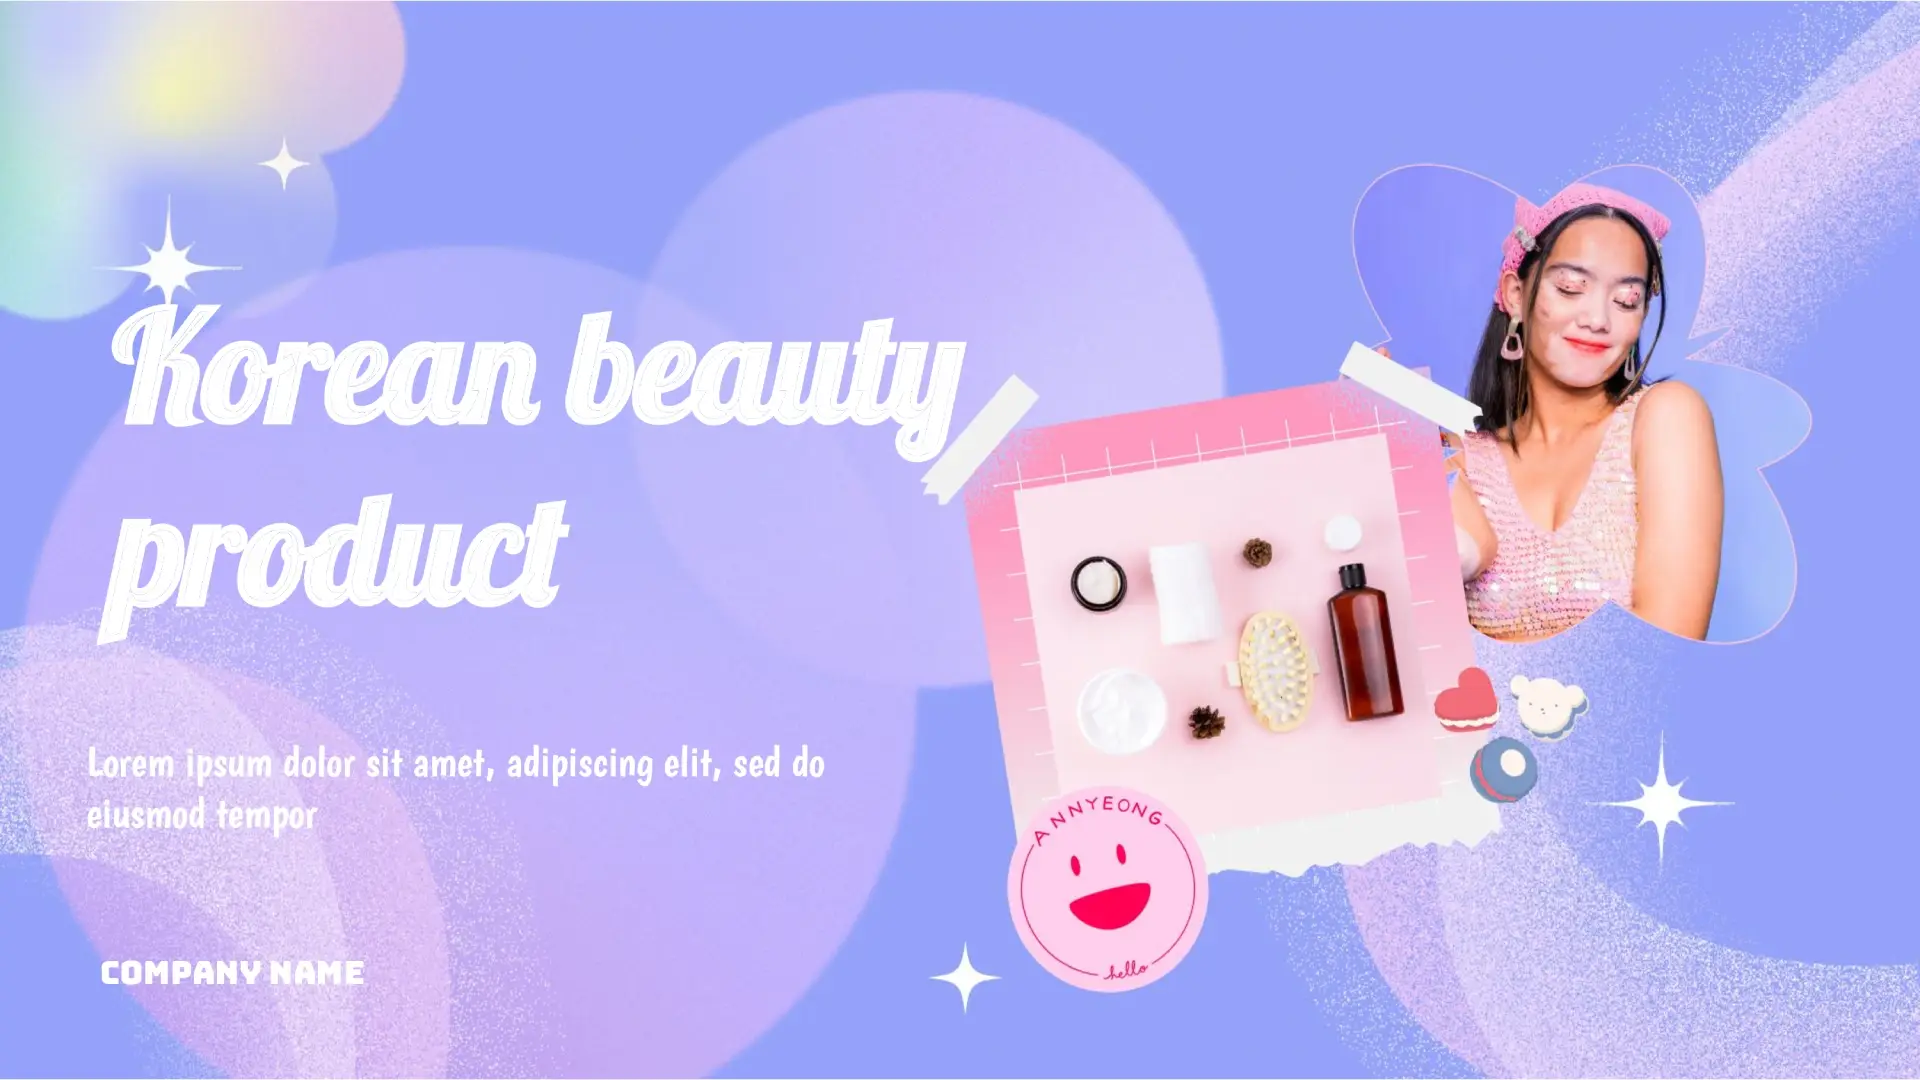 Korean Beauty Product for Google Slides